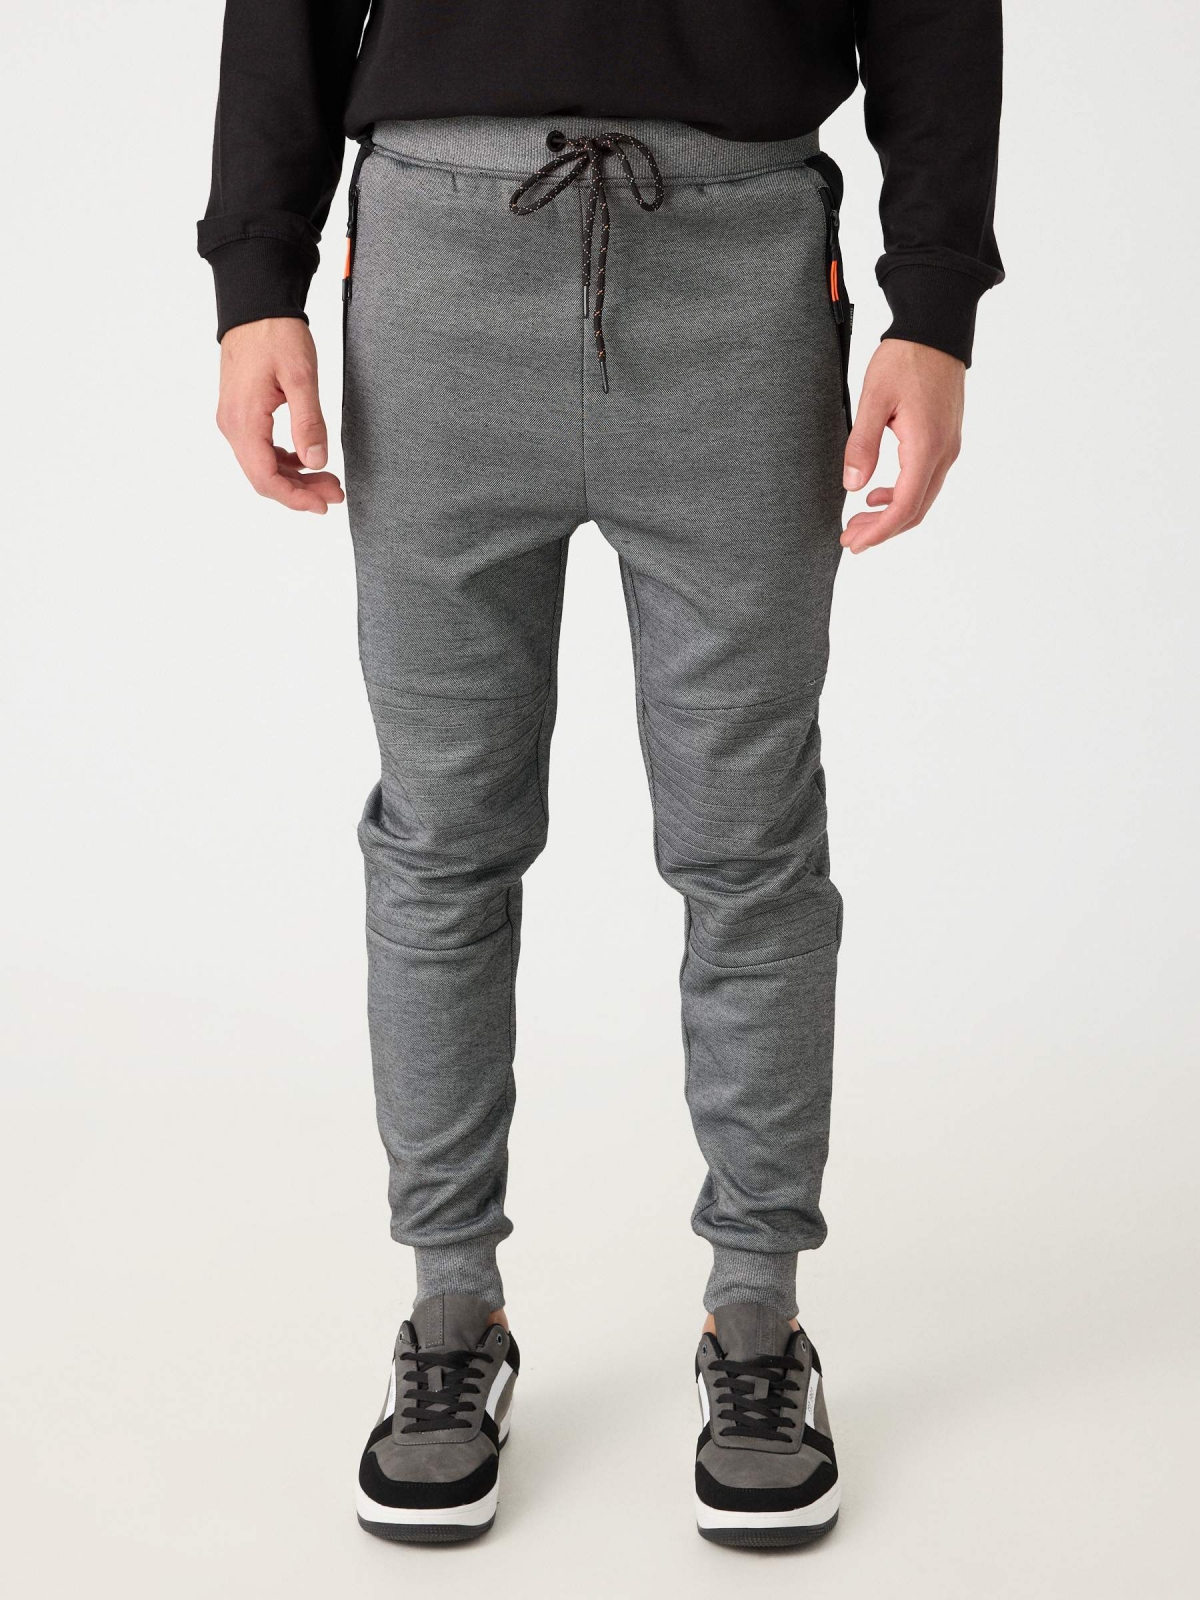 Pantalón jogger gris combinado plomo vista media frontal